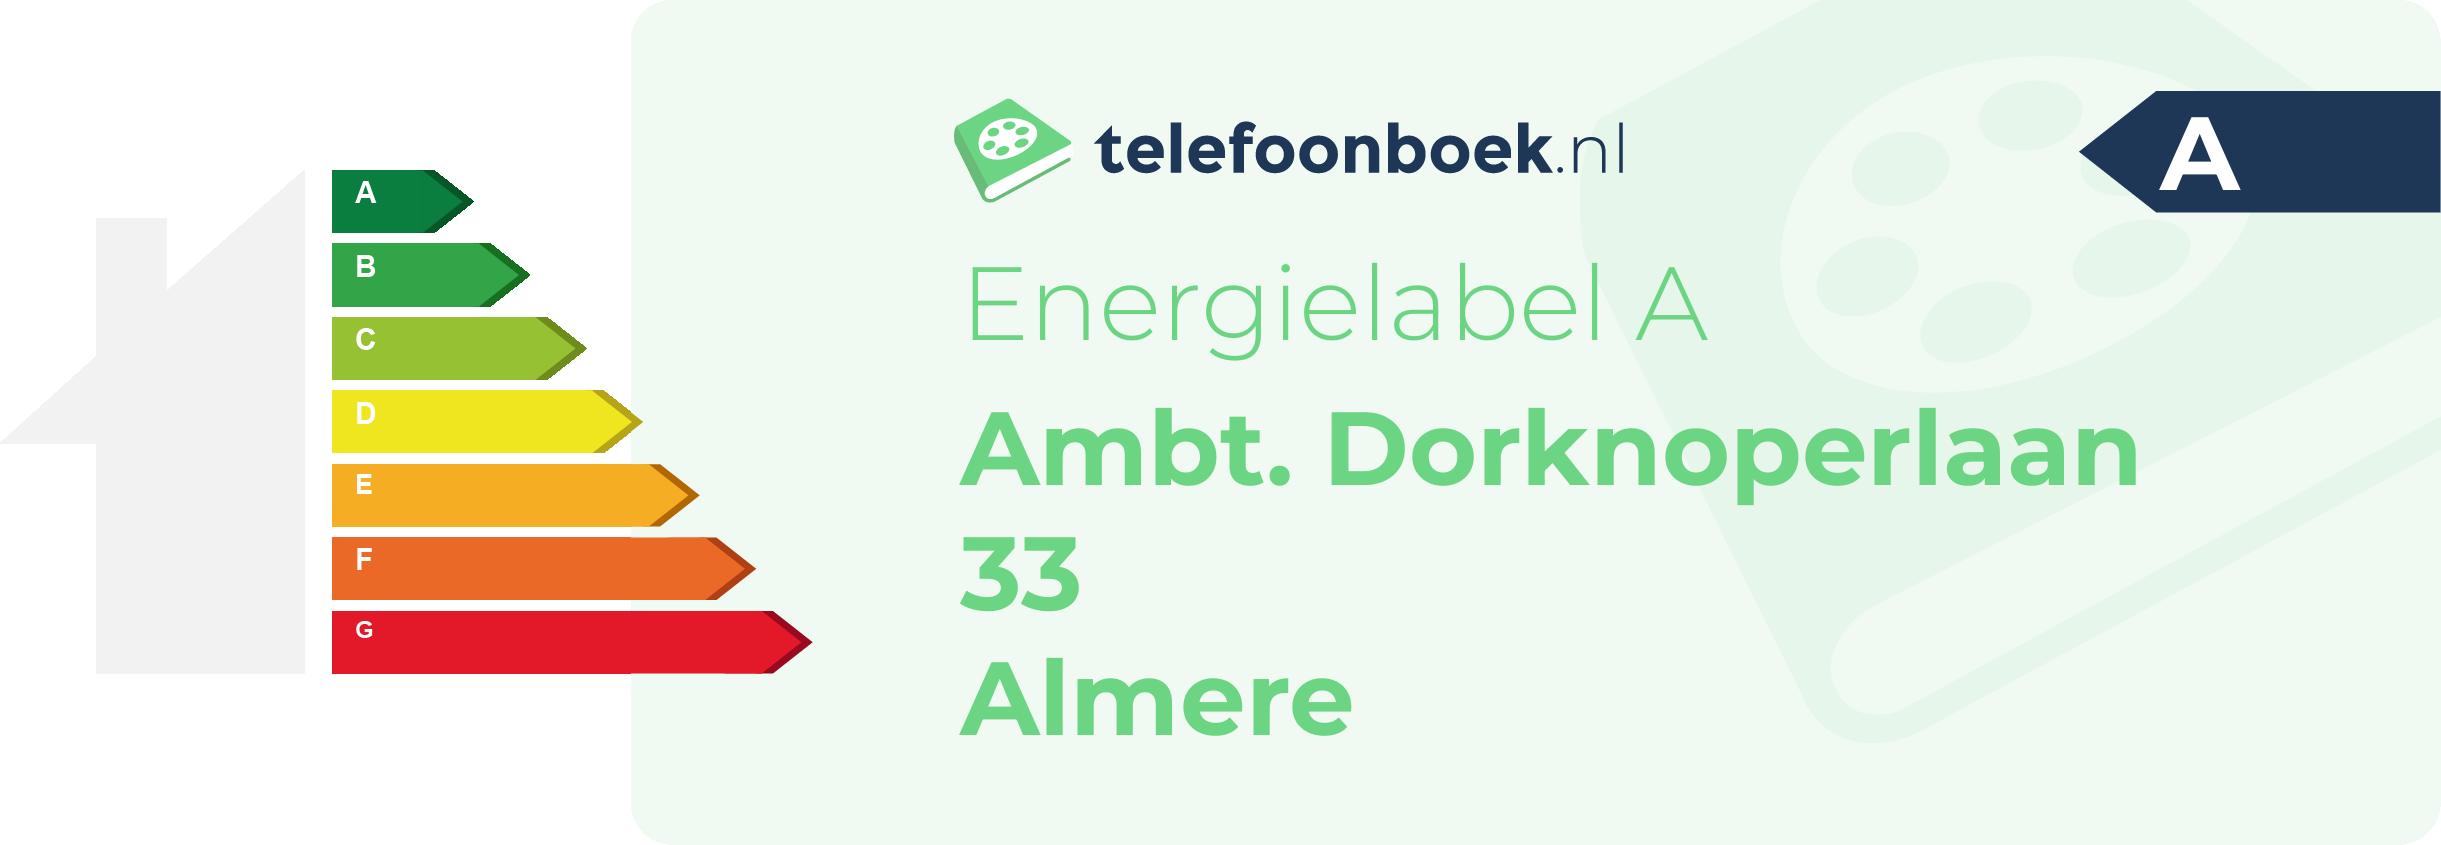 Energielabel Ambt. Dorknoperlaan 33 Almere